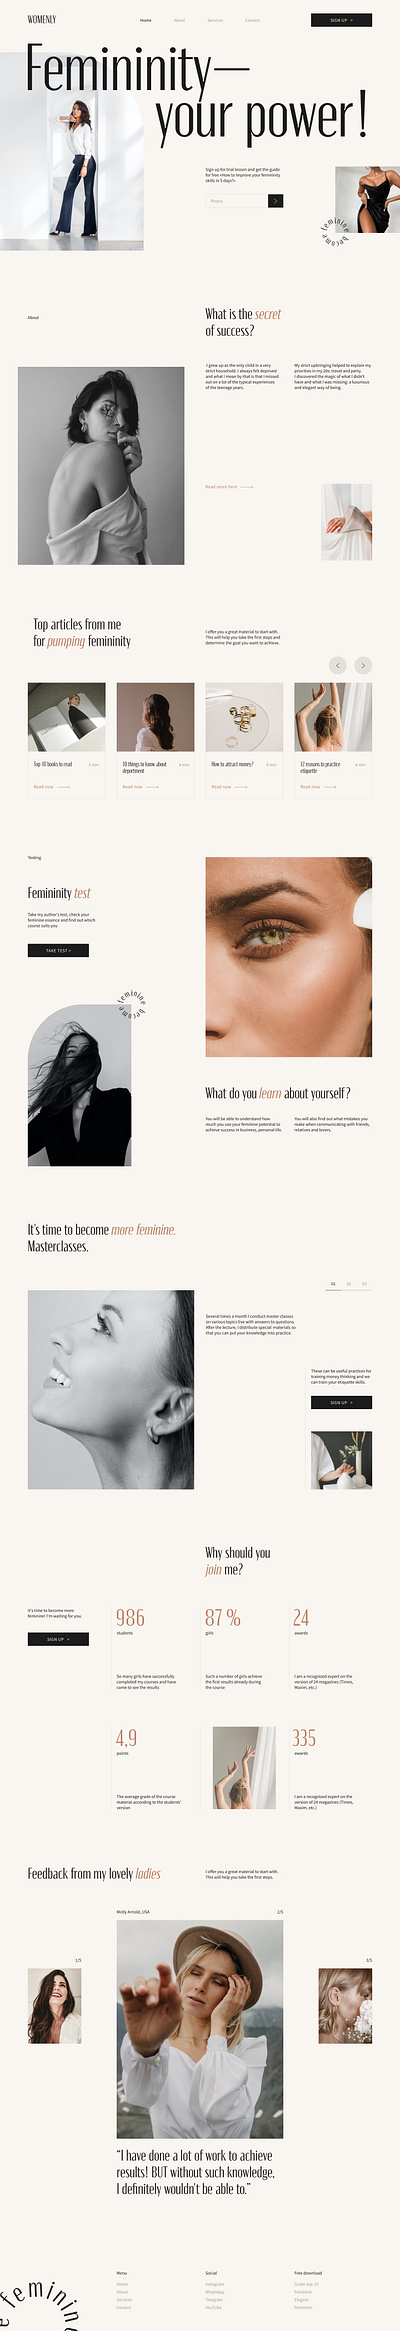 Web Layout branding design typography ui vector